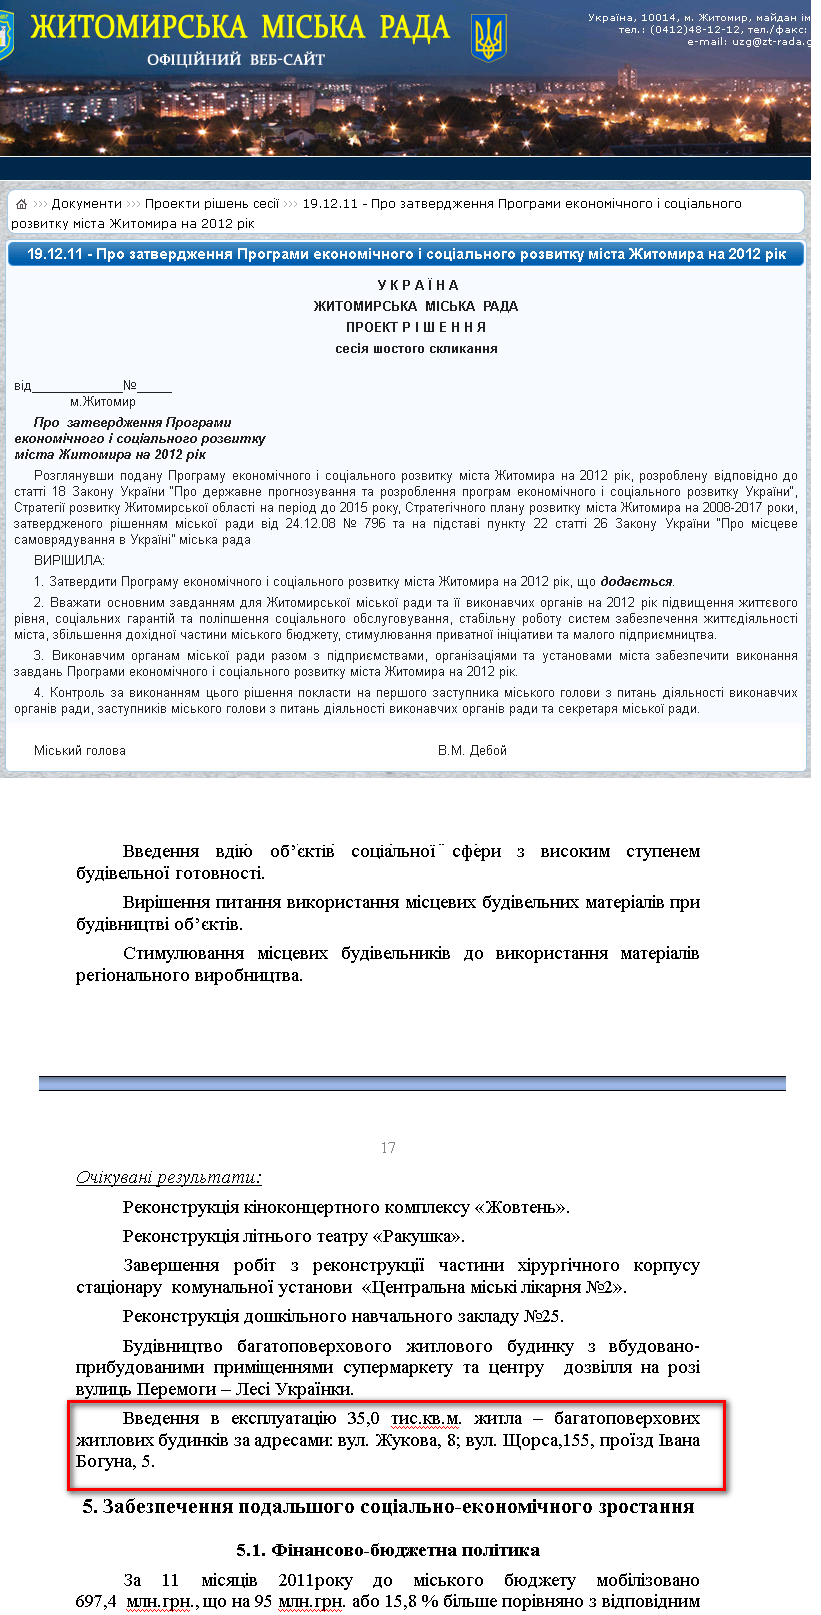 http://zt-rada.gov.ua/pages/p2430